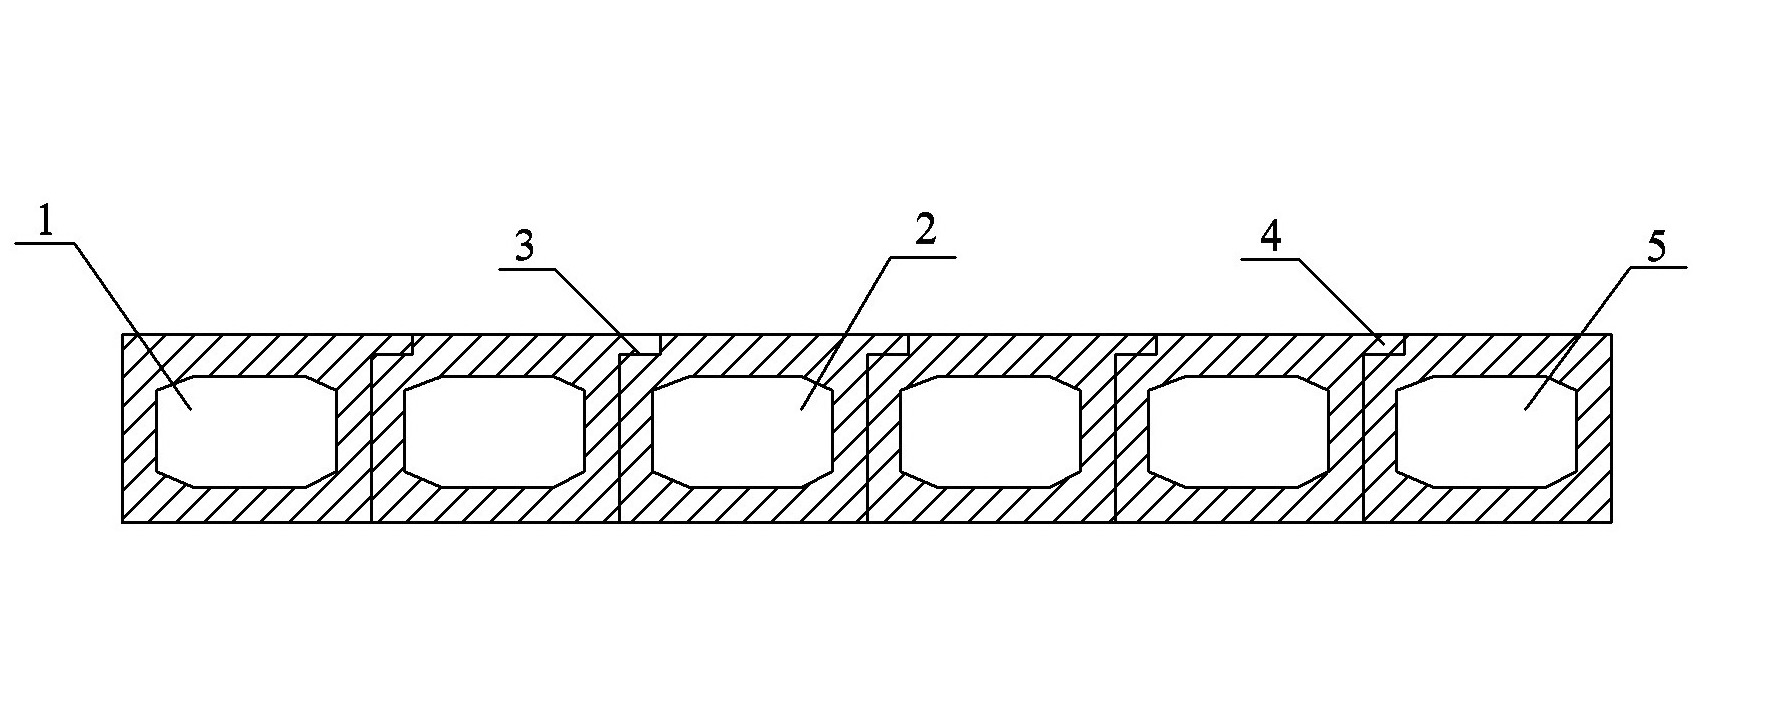 Assembly type hollow slab bridge adopting bracket to replace ribbet to transmit force